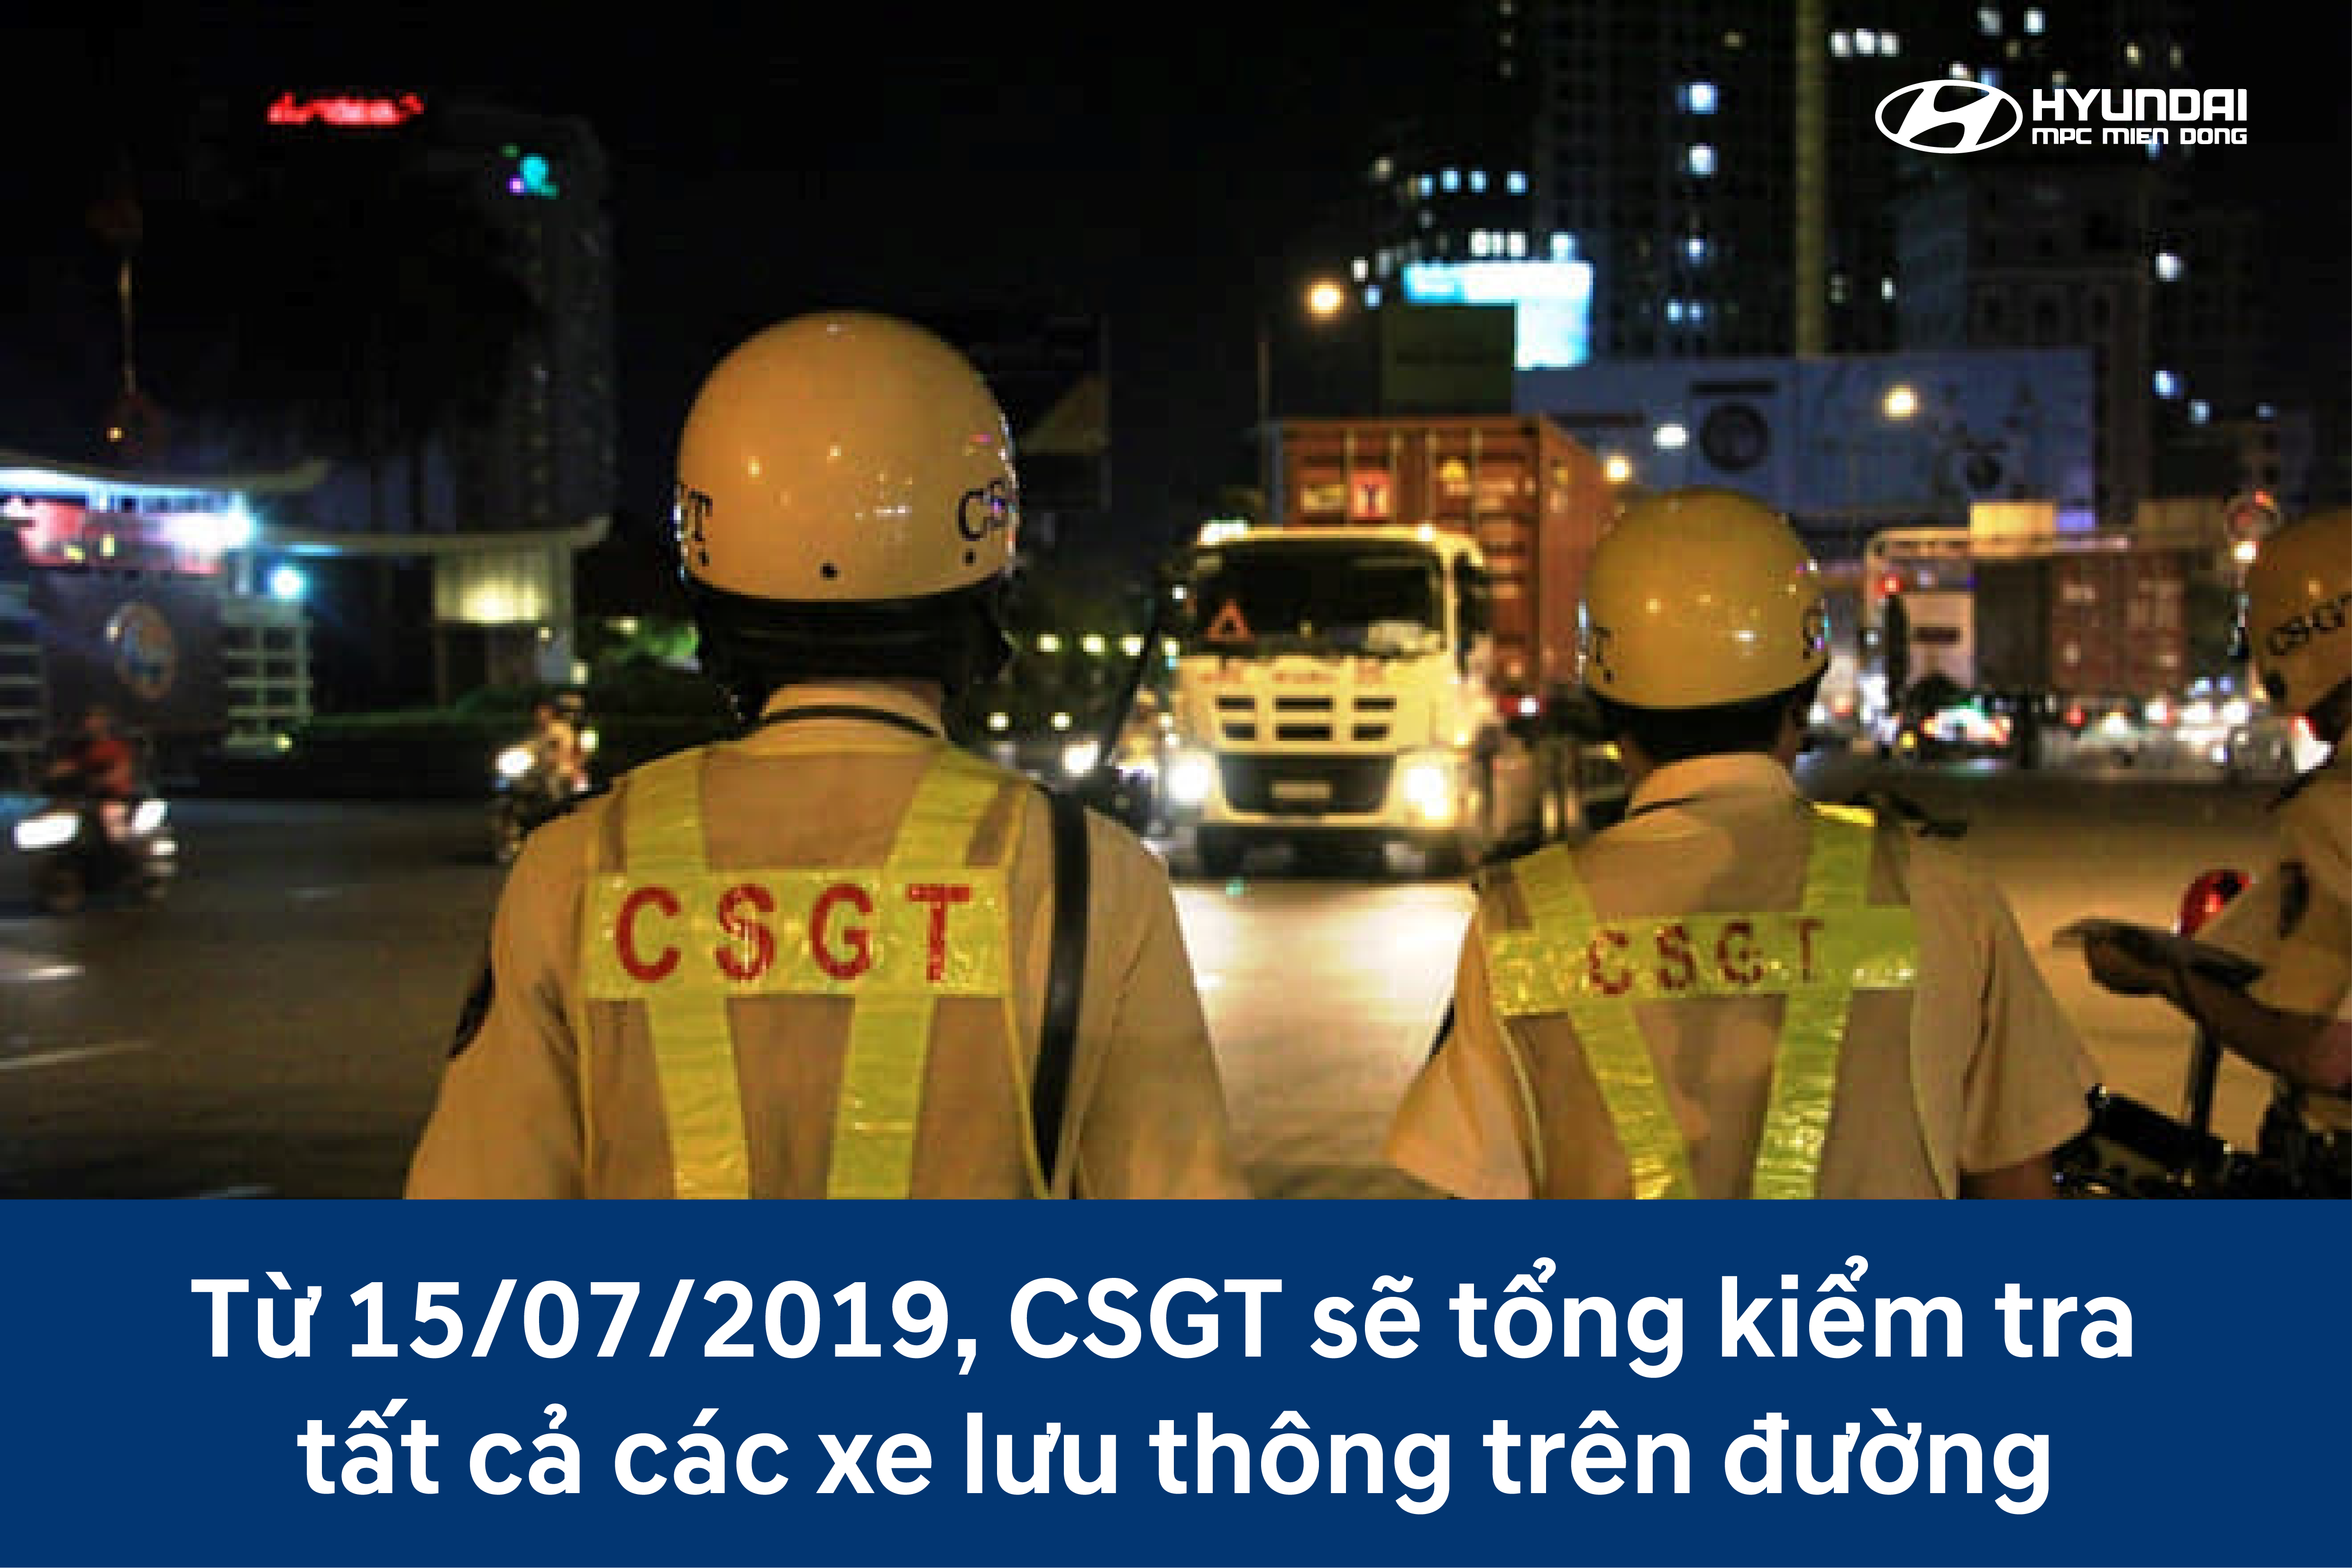 Từ 15/07/2019, CSGT sẽ tổng kiểm tra tất cả các xe lưu thông trên đường